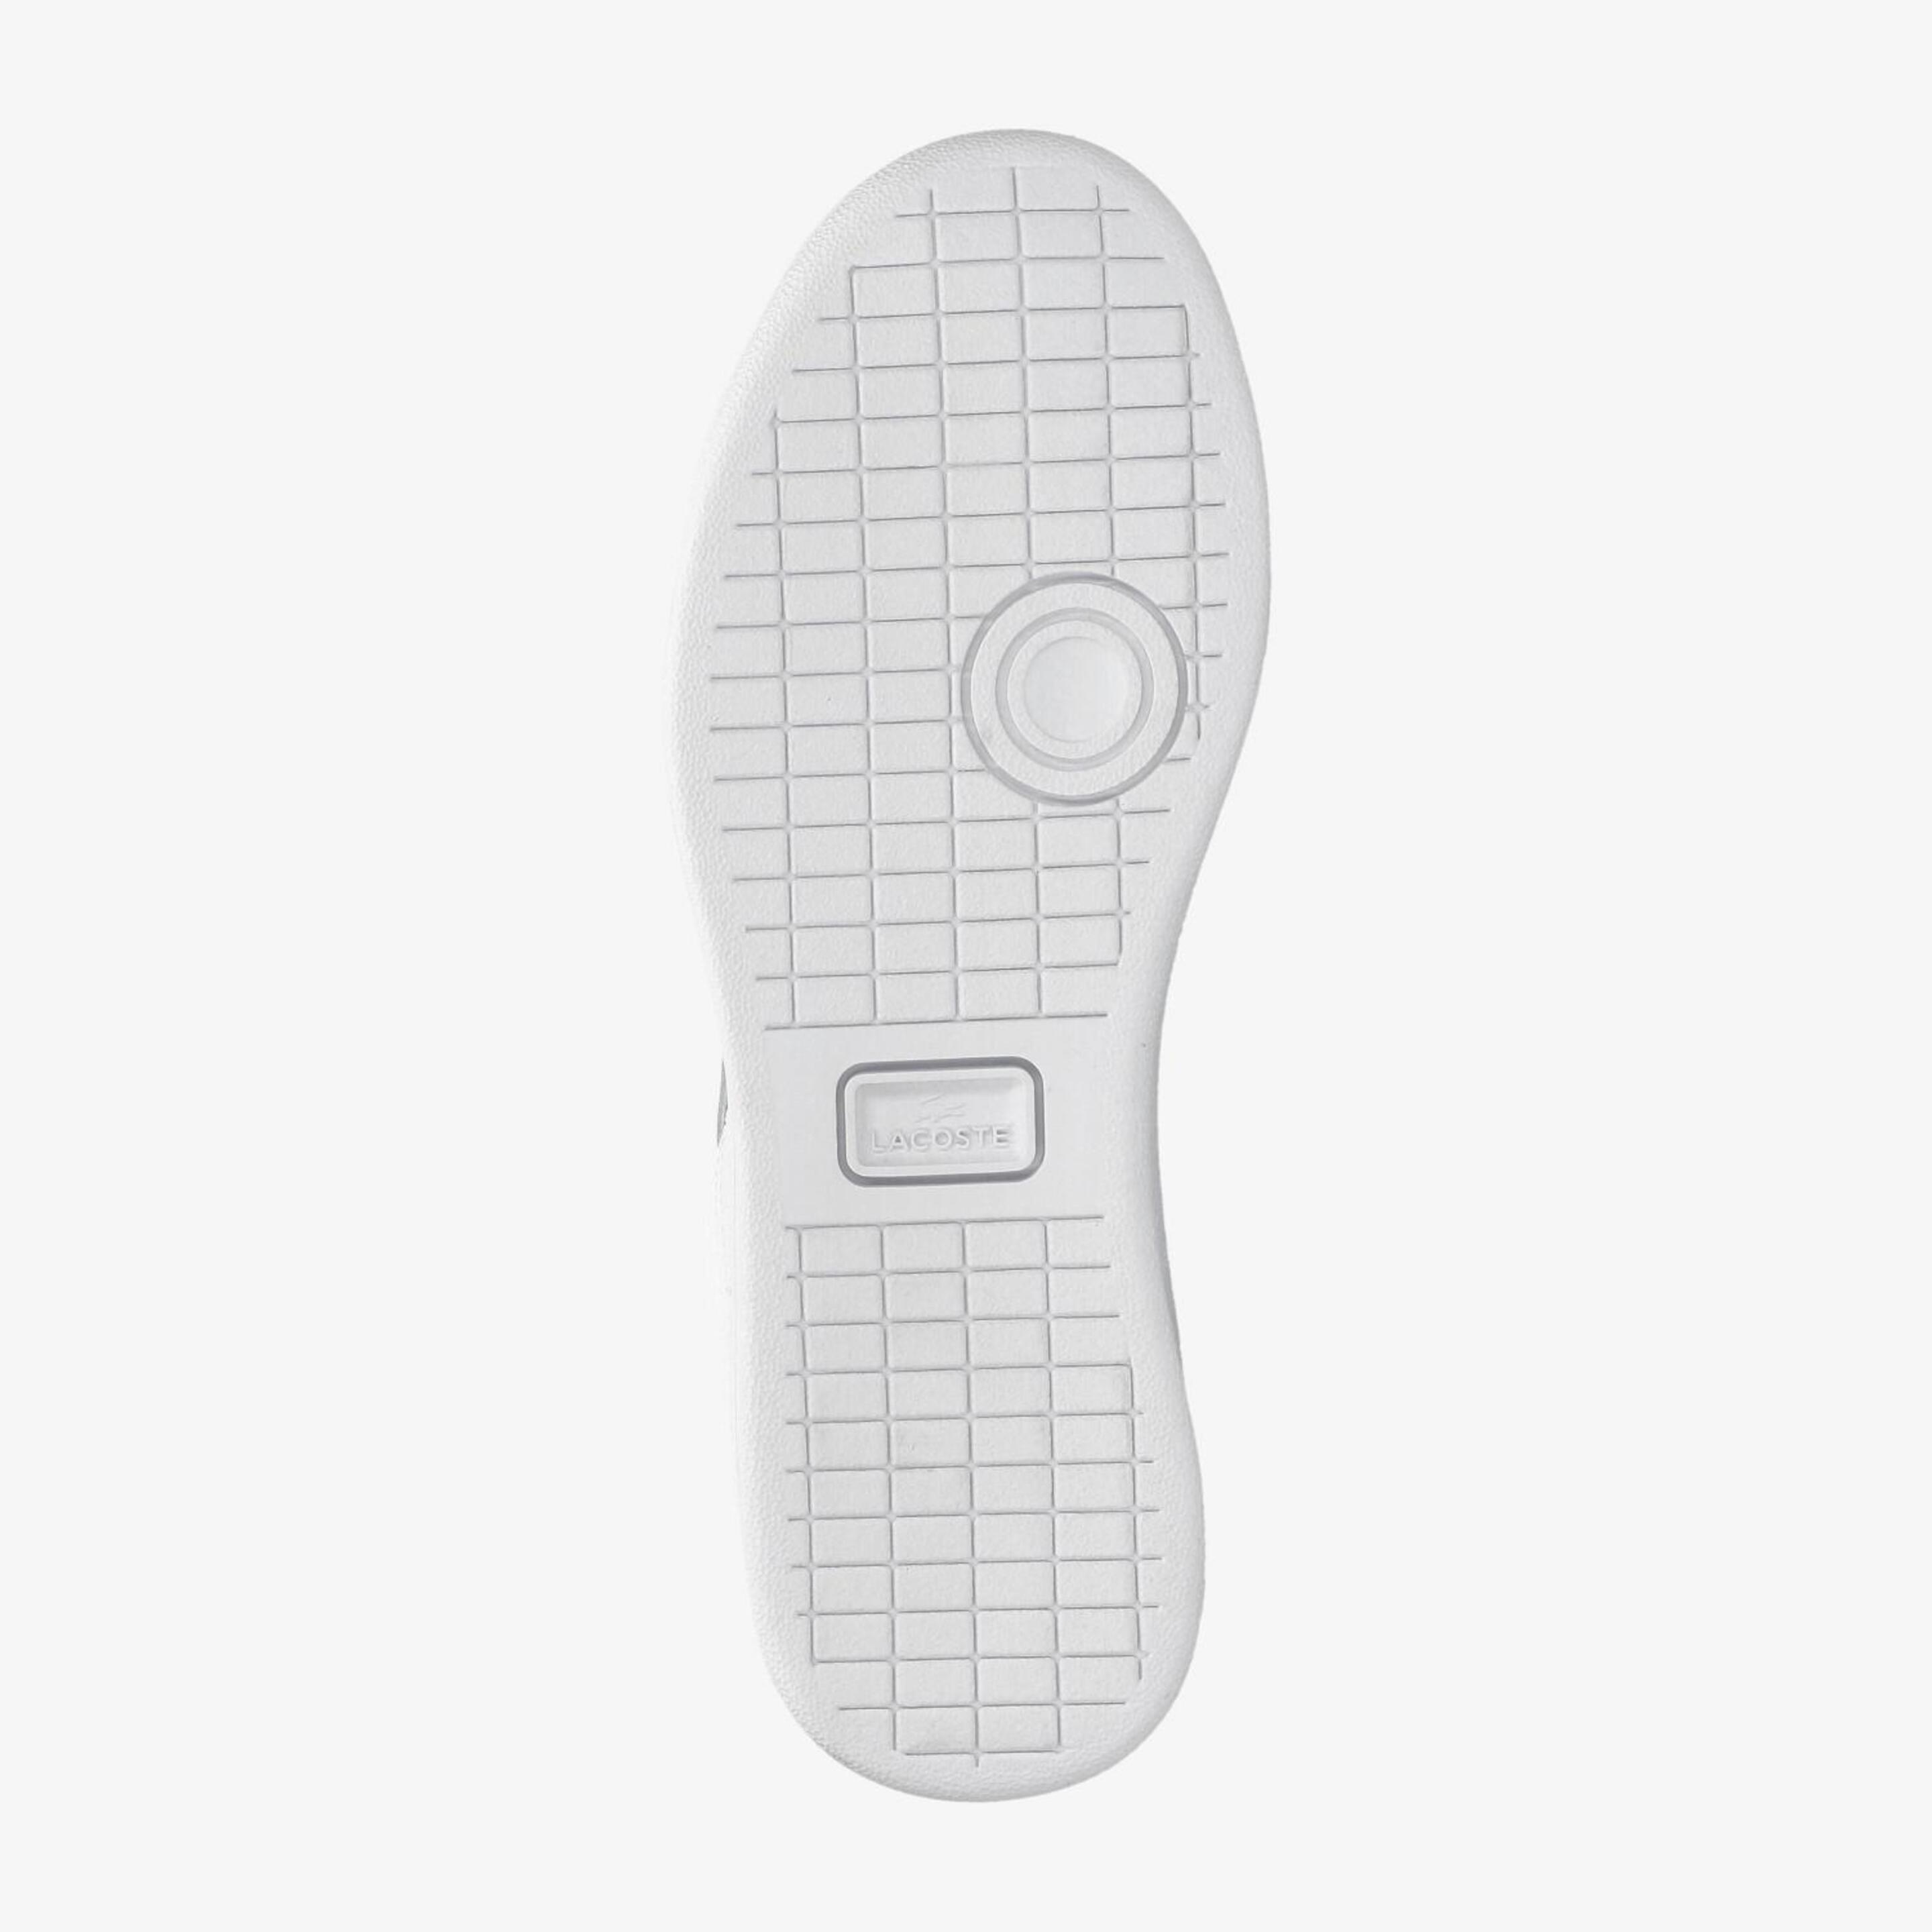 Lacoste Carnaby Pro 124 1 Sfa - Blanco - Zapatillas Mujer